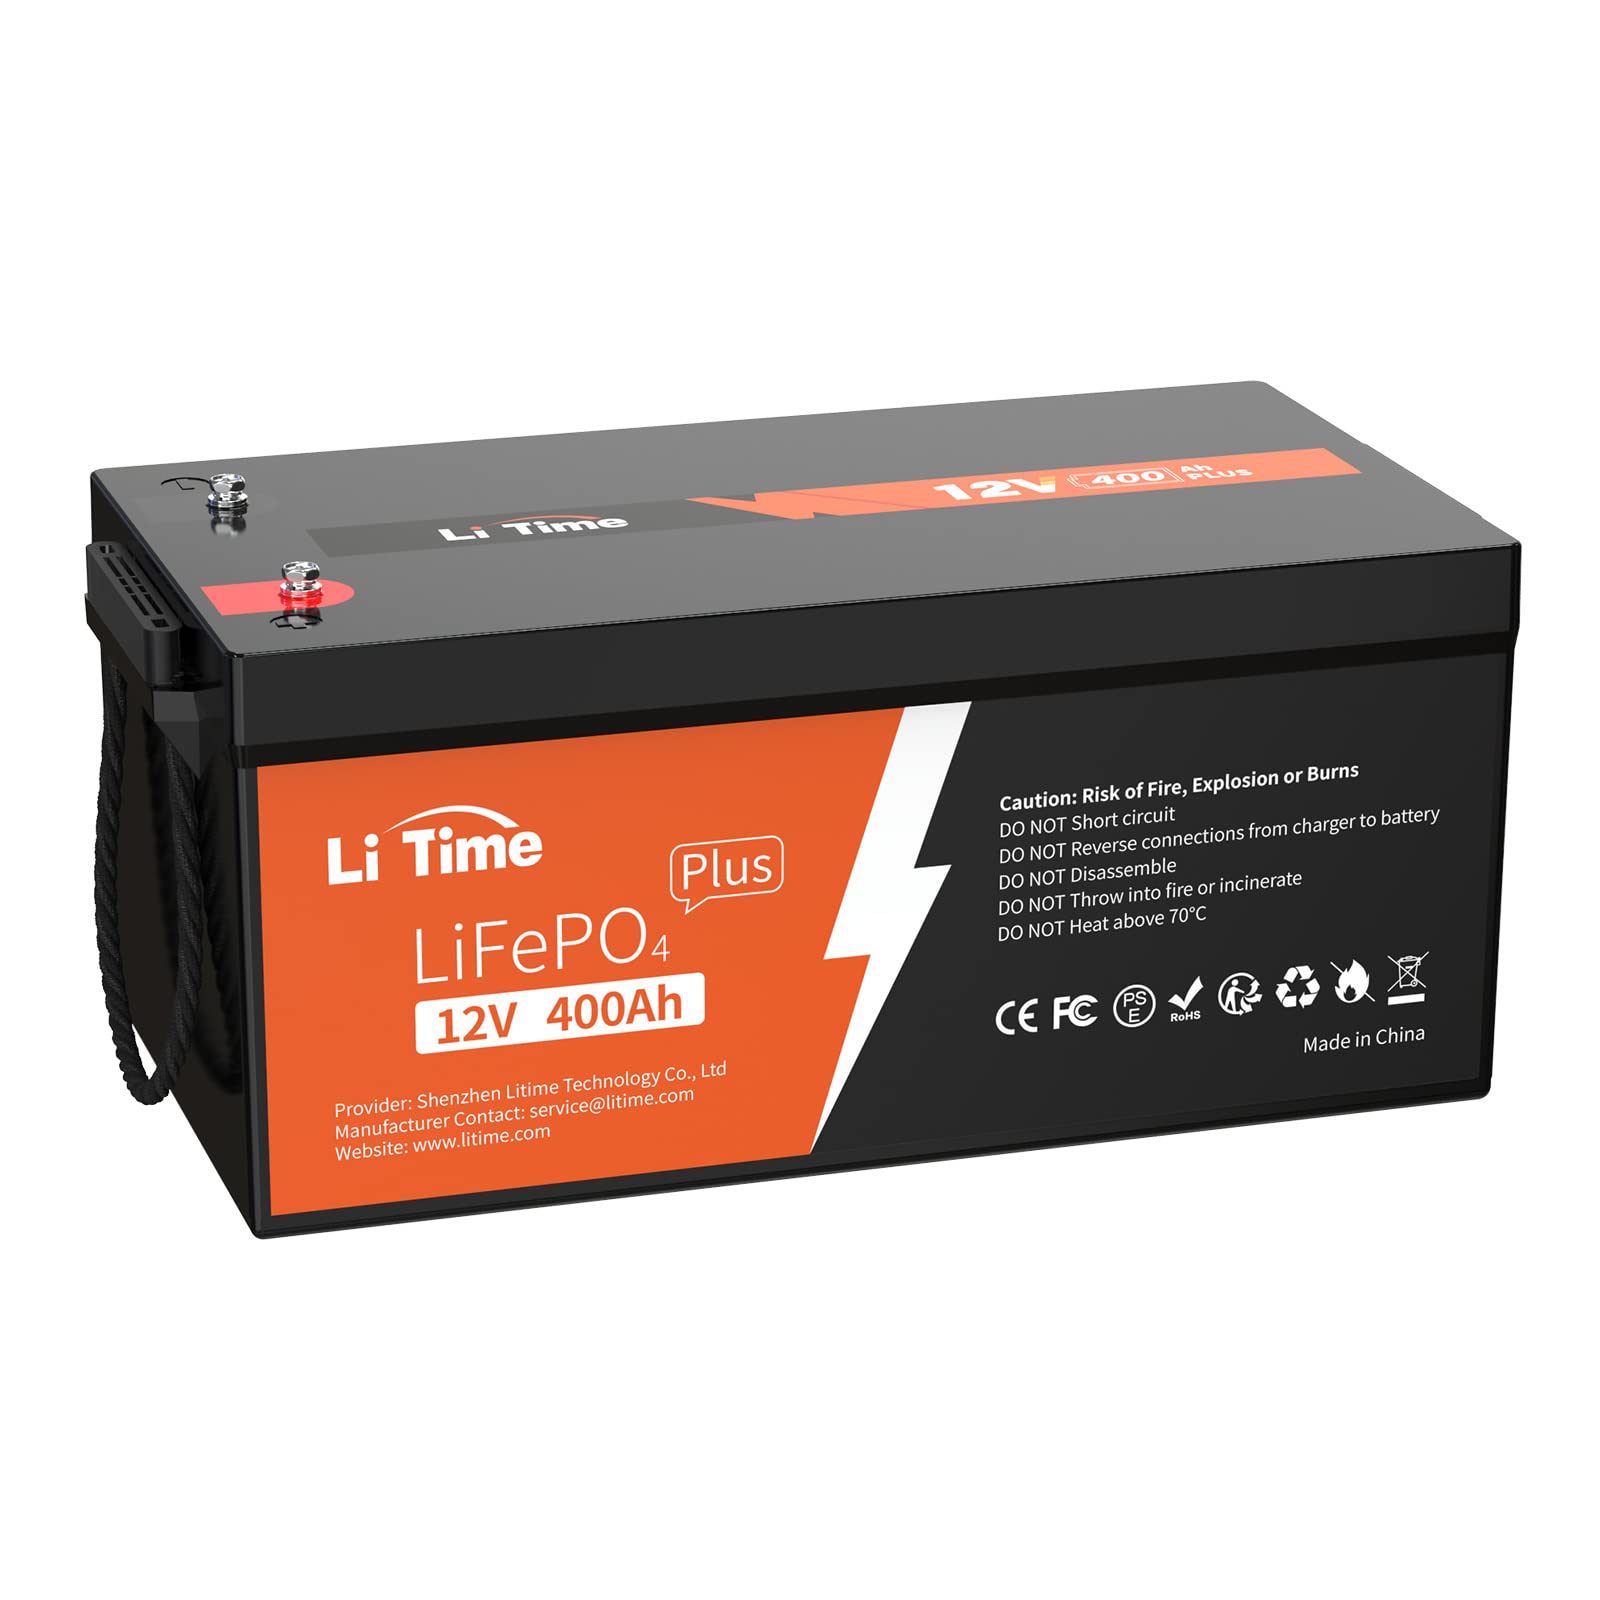 LiTime 12V 400Ah LiFePO4-Batterie,Perfekter Ersatz für Bleisäure-Batterie, 4000-15000 Zyklen, 5,12kWh Lithium-Batterie, Eingebautes 250A BMS,Perfekt für Solarsystem, Backup-Strom, Off-Grid und RV von Litime